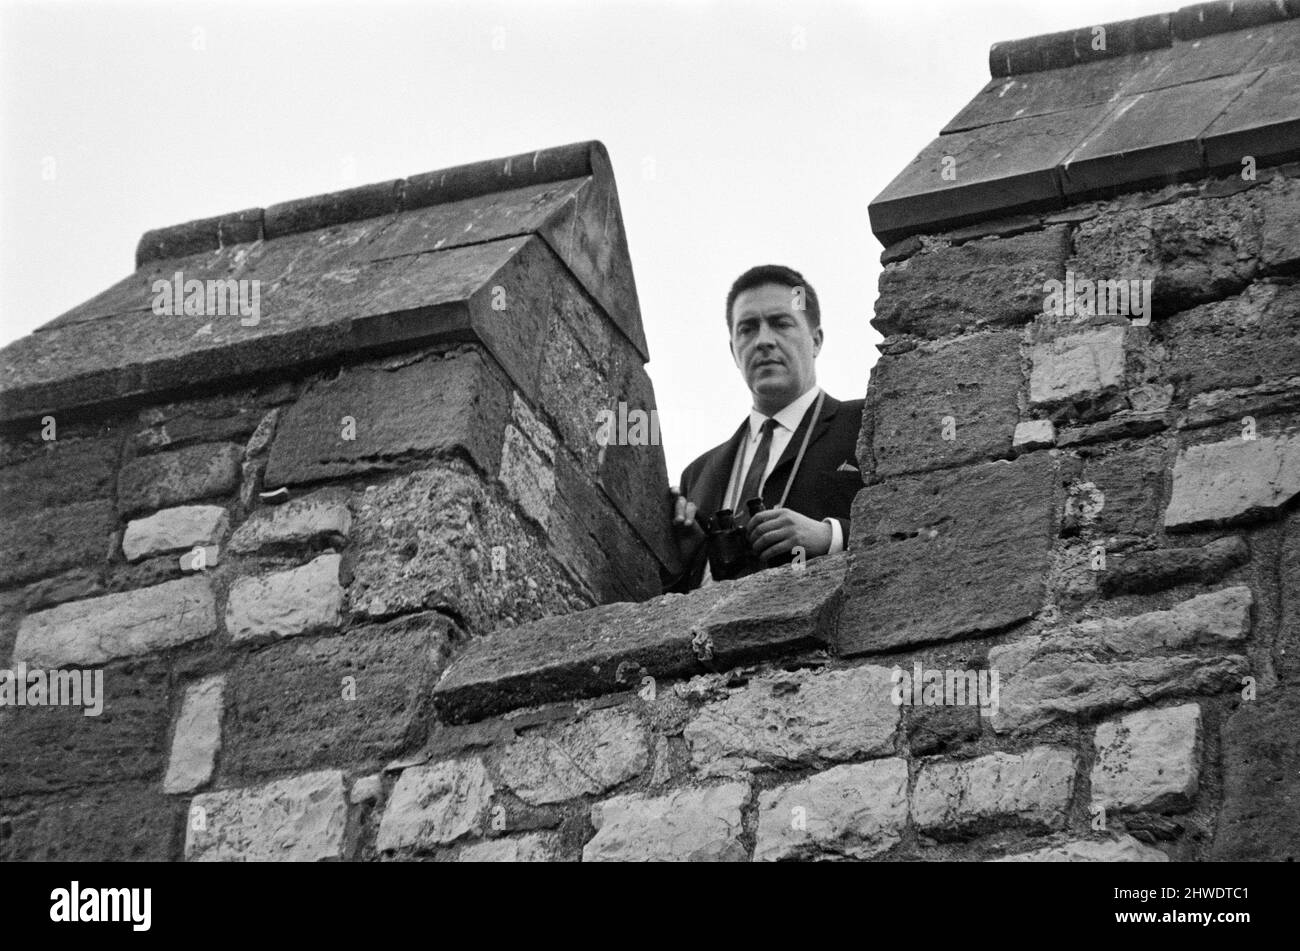 Die Investitur von Prinz Charles auf Caernarfon Castle. Caernarfon, Wales. Im Bild: Sicherheitsdienst im Schloss Caernarfon. 1.. Juli 1969. Stockfoto